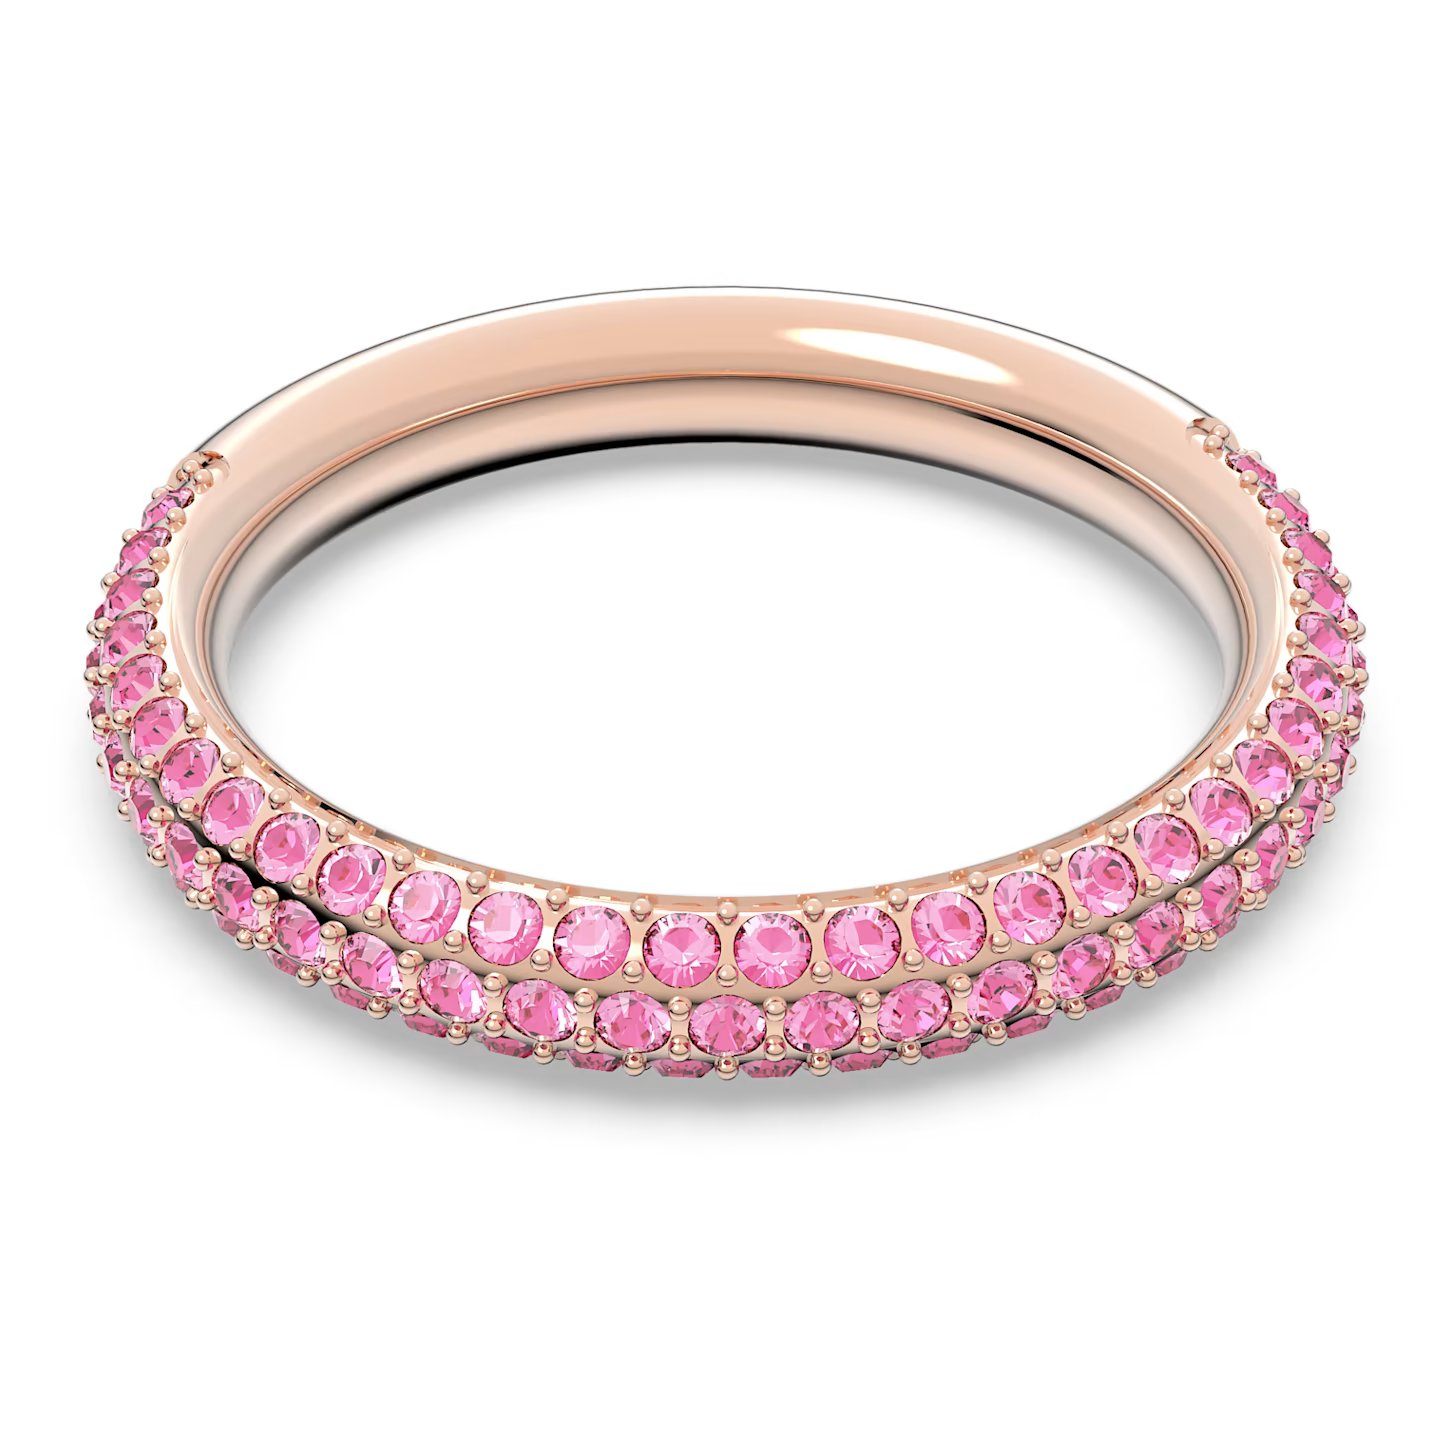 Swarovski Nádherný prsteň s ružovými kryštálmi Swarovski Stone 5642910 52 mm